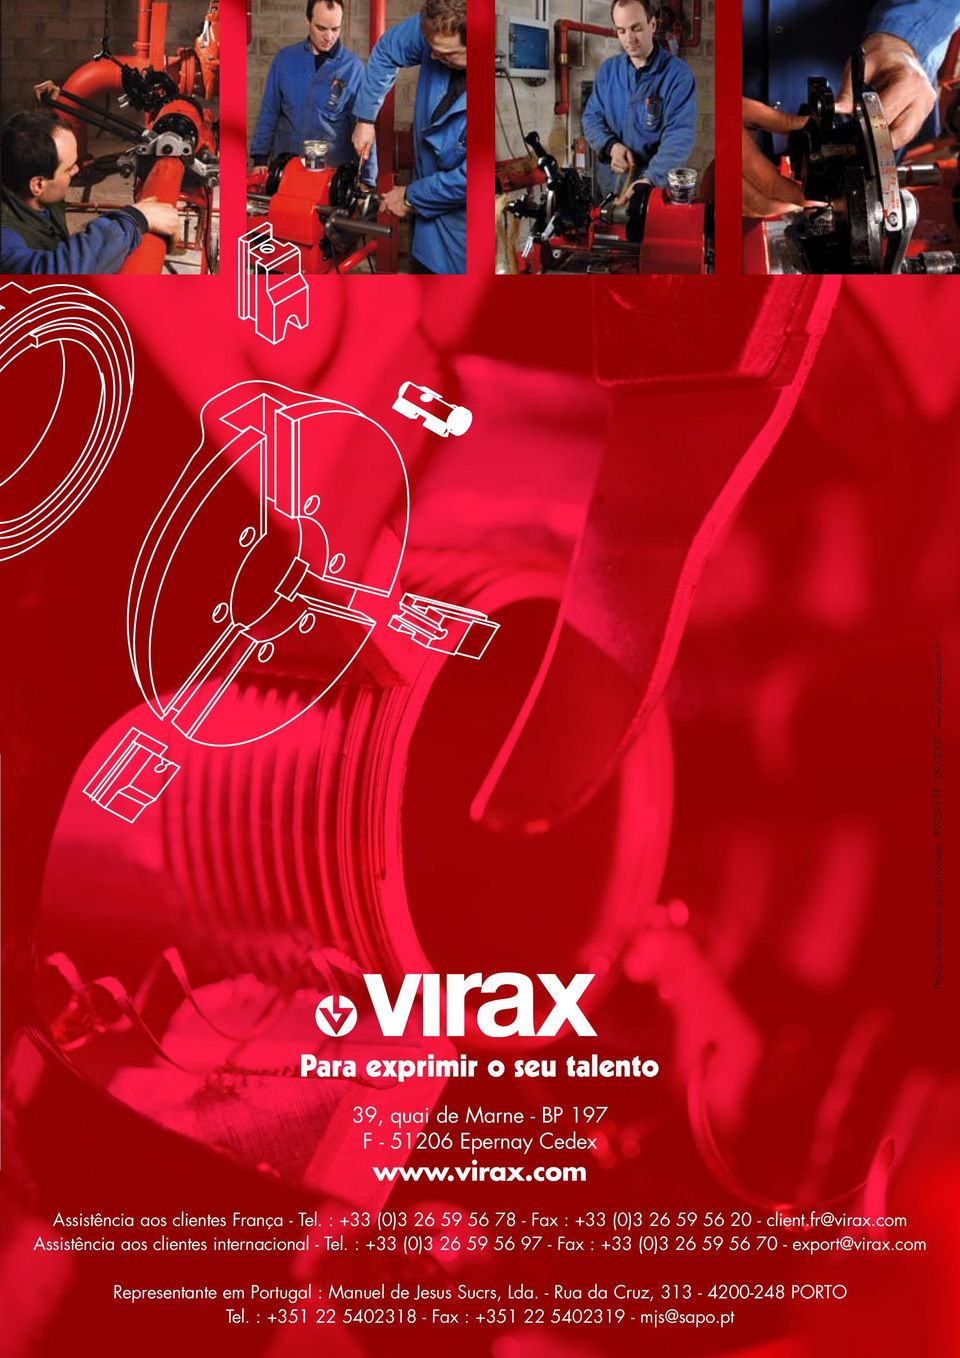 : +33 (0)3 26 59 56 78 - Fax : +33 (0)3 26 59 56 20 - client.fr@virax.com Assistência aos clientes internacional - Tel.